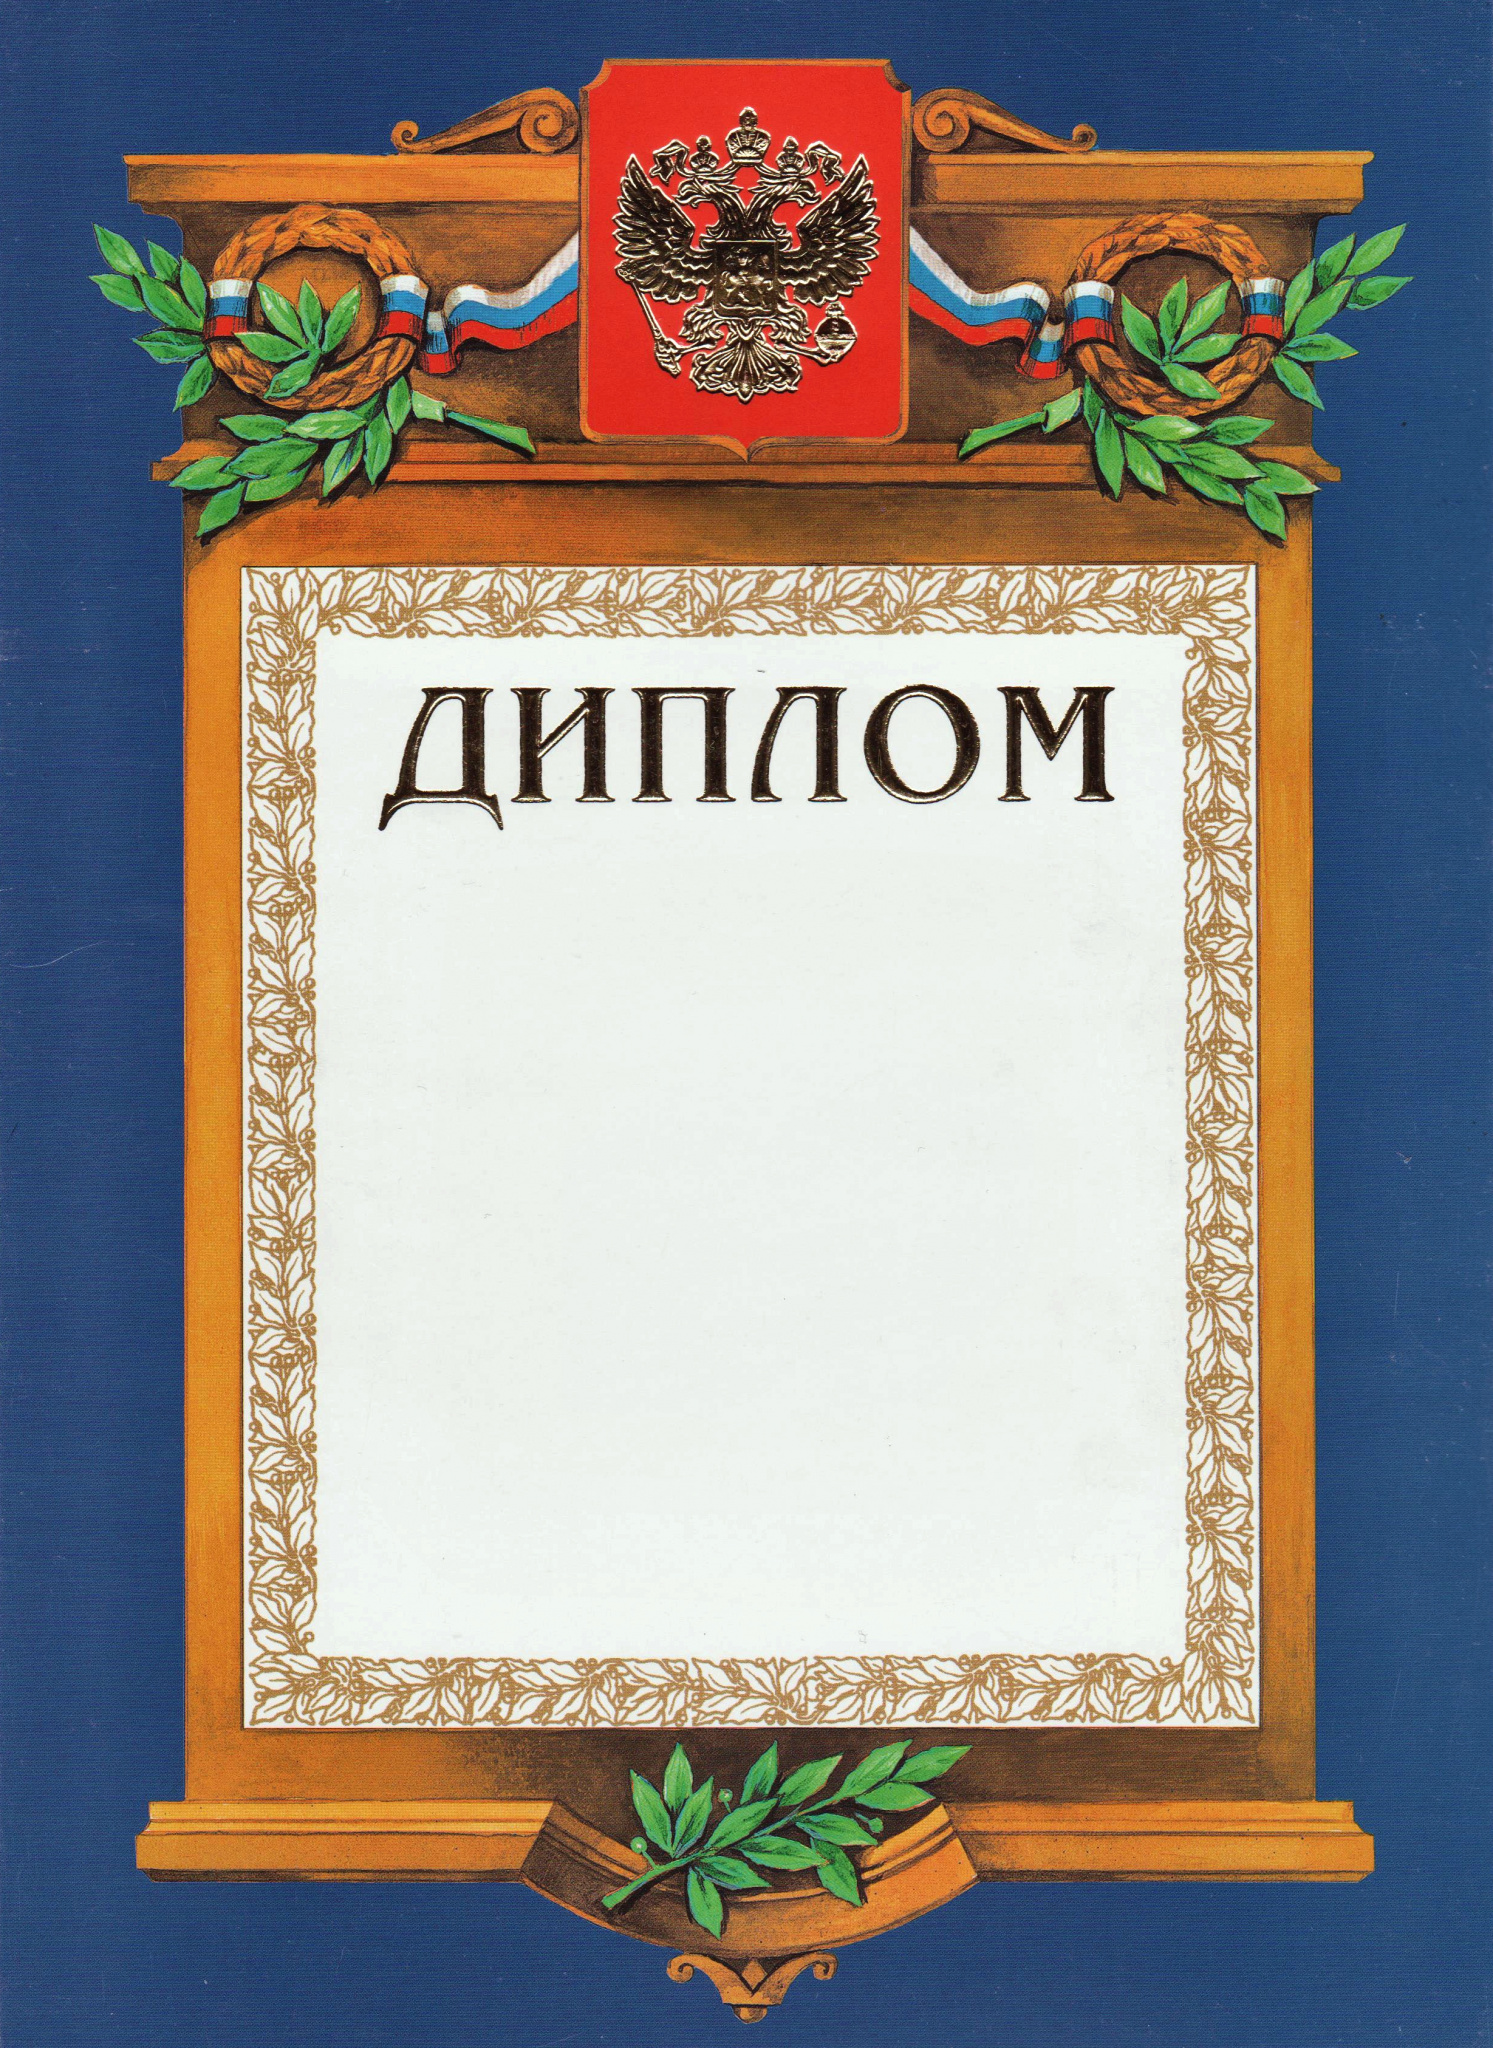 Диплом А4 синяя рамка, герб, триколор